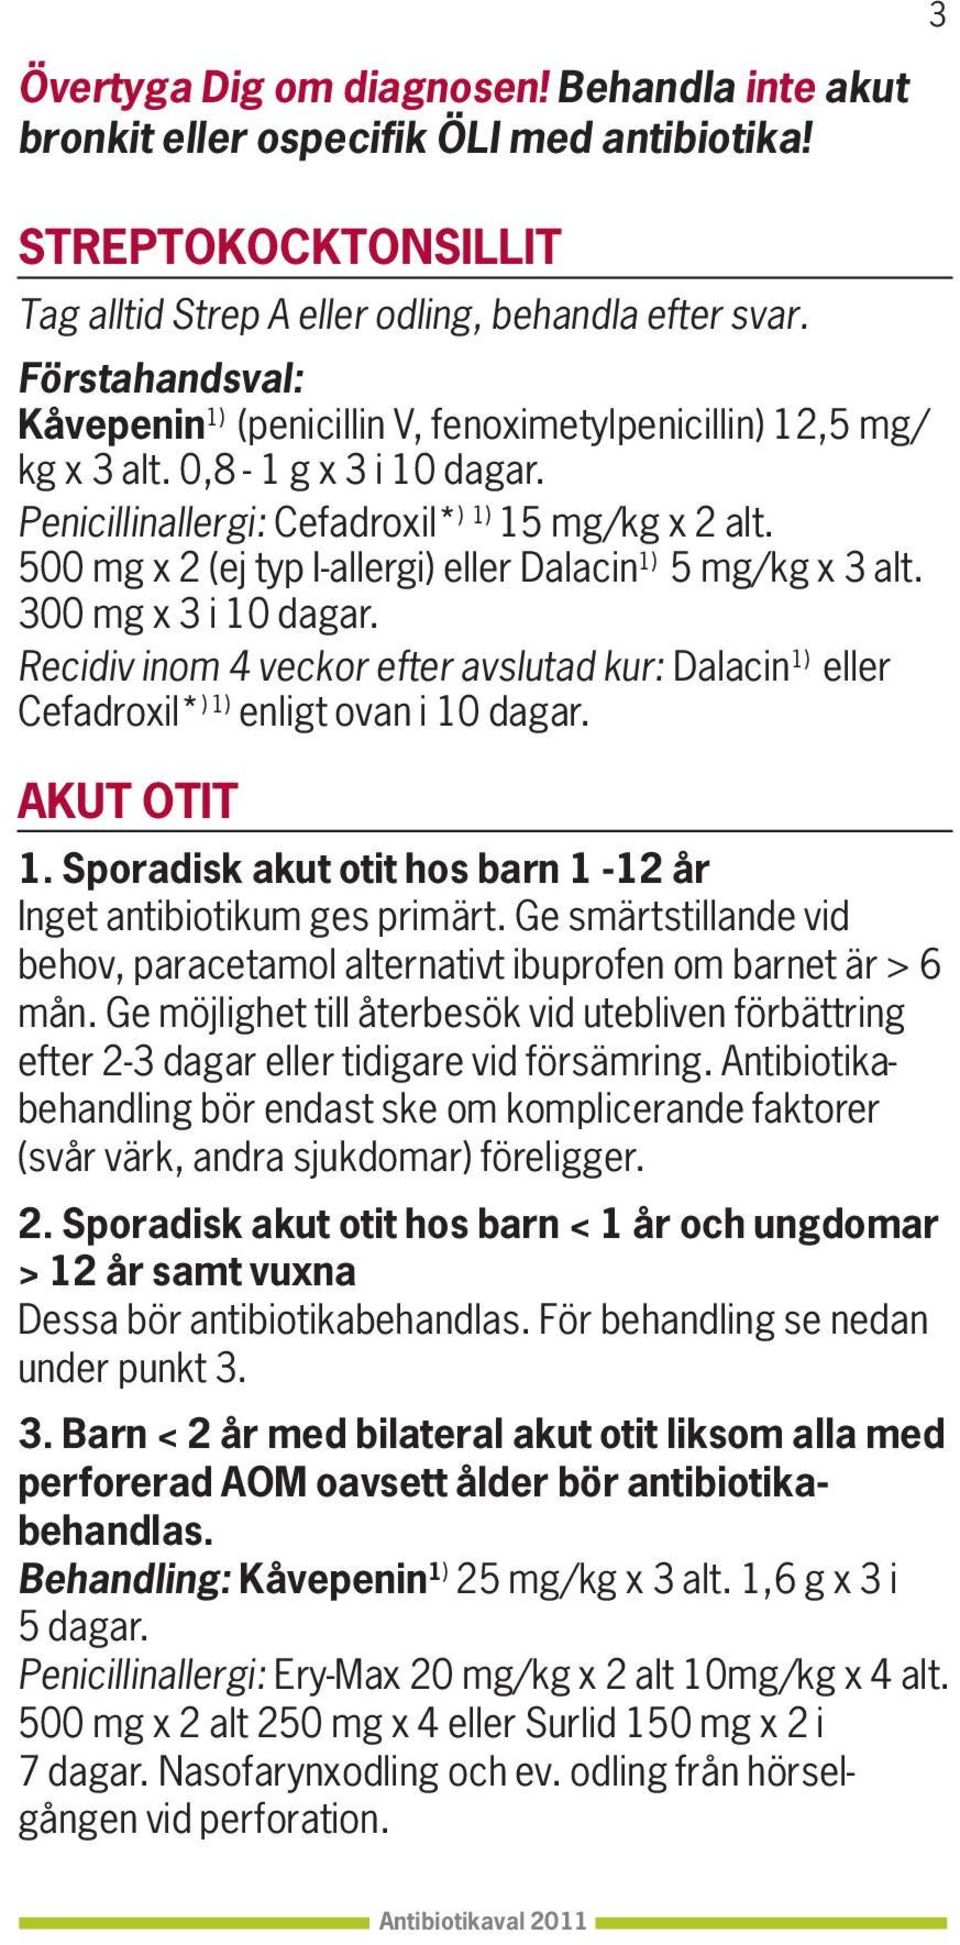 500 mg x 2 (ej typ I-allergi) eller Dalacin 1) 5 mg/kg x 3 alt. 300 mg x 3 i 10 dagar. Recidiv inom 4 veckor efter avslutad kur: Dalacin 1) eller Cefadroxil* ) 1) enligt ovan i 10 dagar. AKUT OTIT 1.